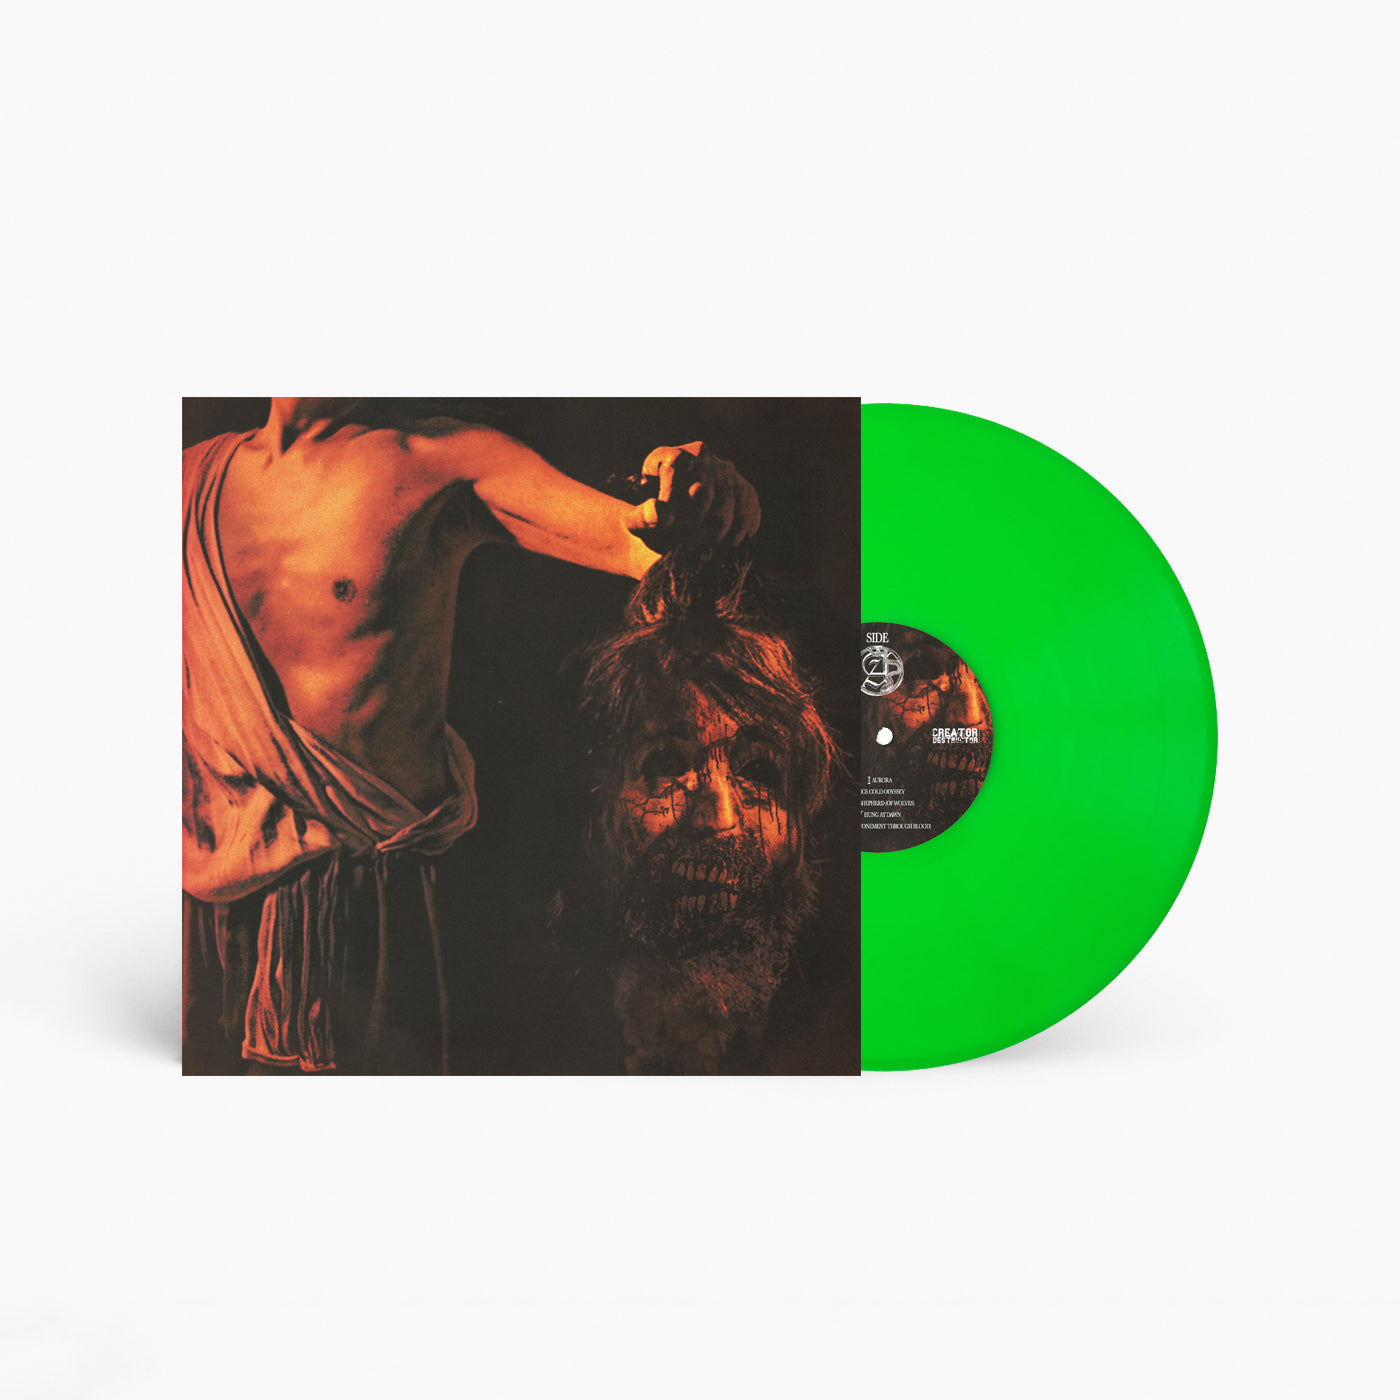 Slowbleed "The Blazing Sun, A Fiery Dawn" LP (Neon Green Vinyl)